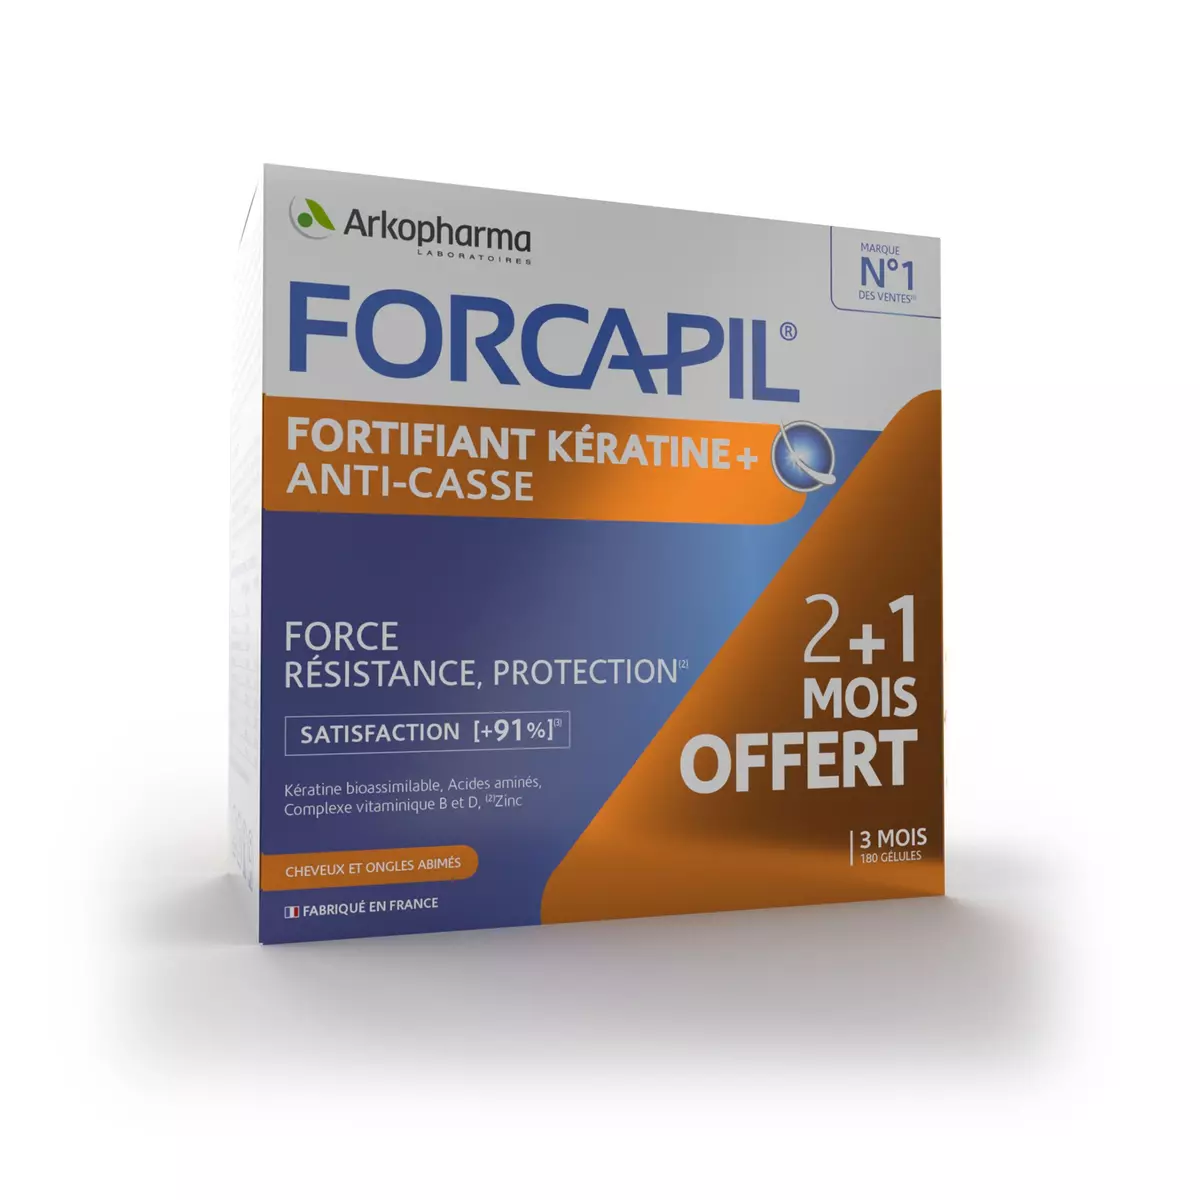 ARKOPHARMA Forcapil fortifiant kératine + anti casse Traitement de 3 mois 180 gélules